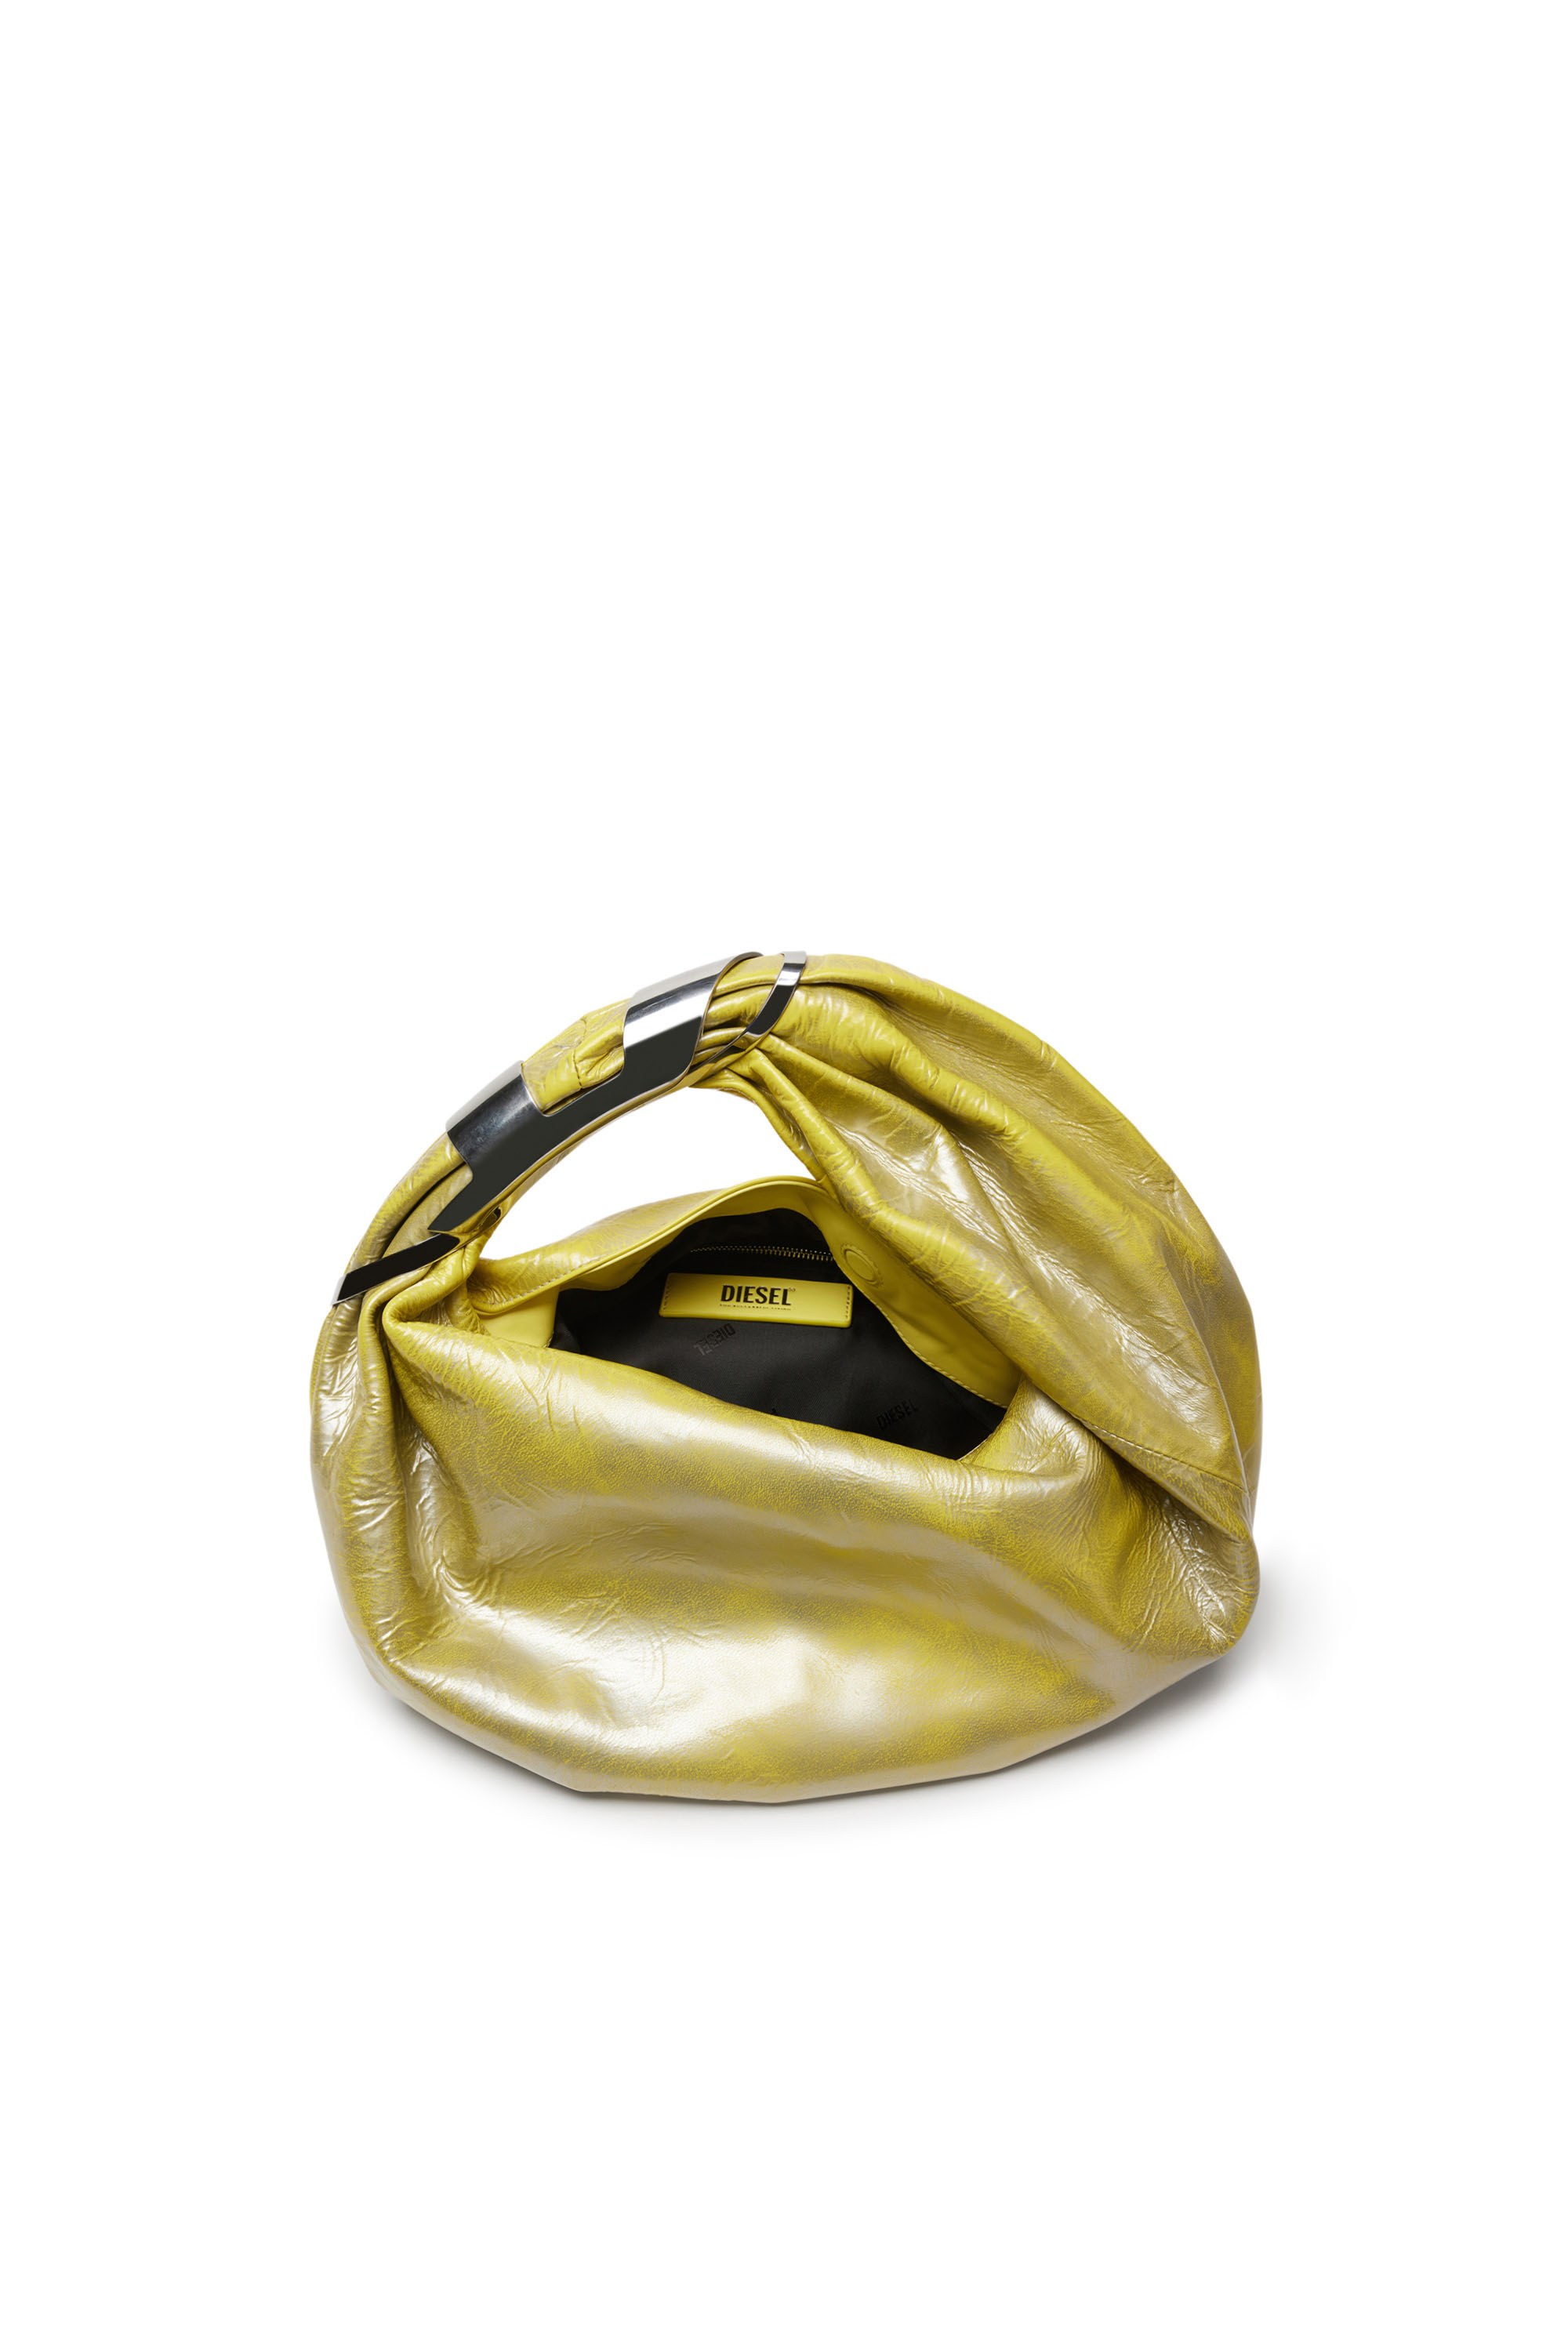 Diesel - GRAB-D HOBO S, Female Grab-D S-Hobo bag in metallic leather in イエロー - Image 5